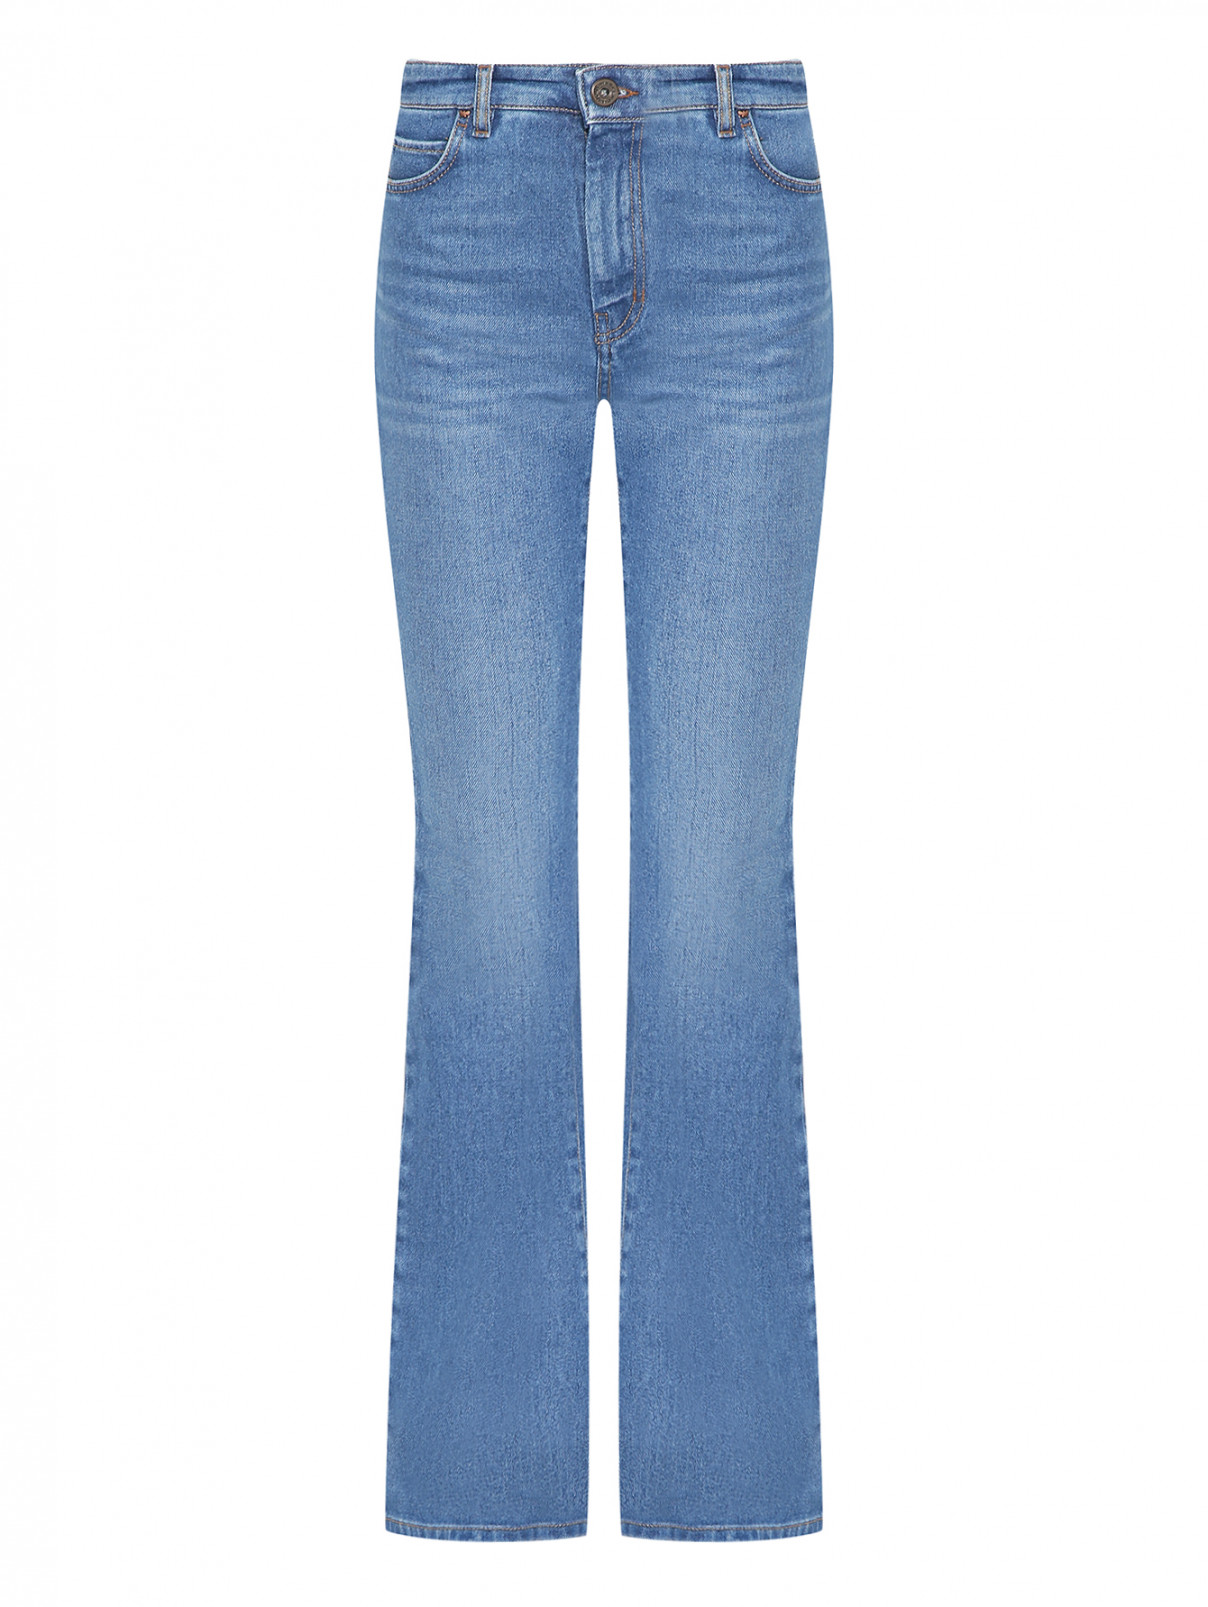 Расклешенные джинсы с высокой посадкой Weekend Max Mara  –  Общий вид  – Цвет:  Синий